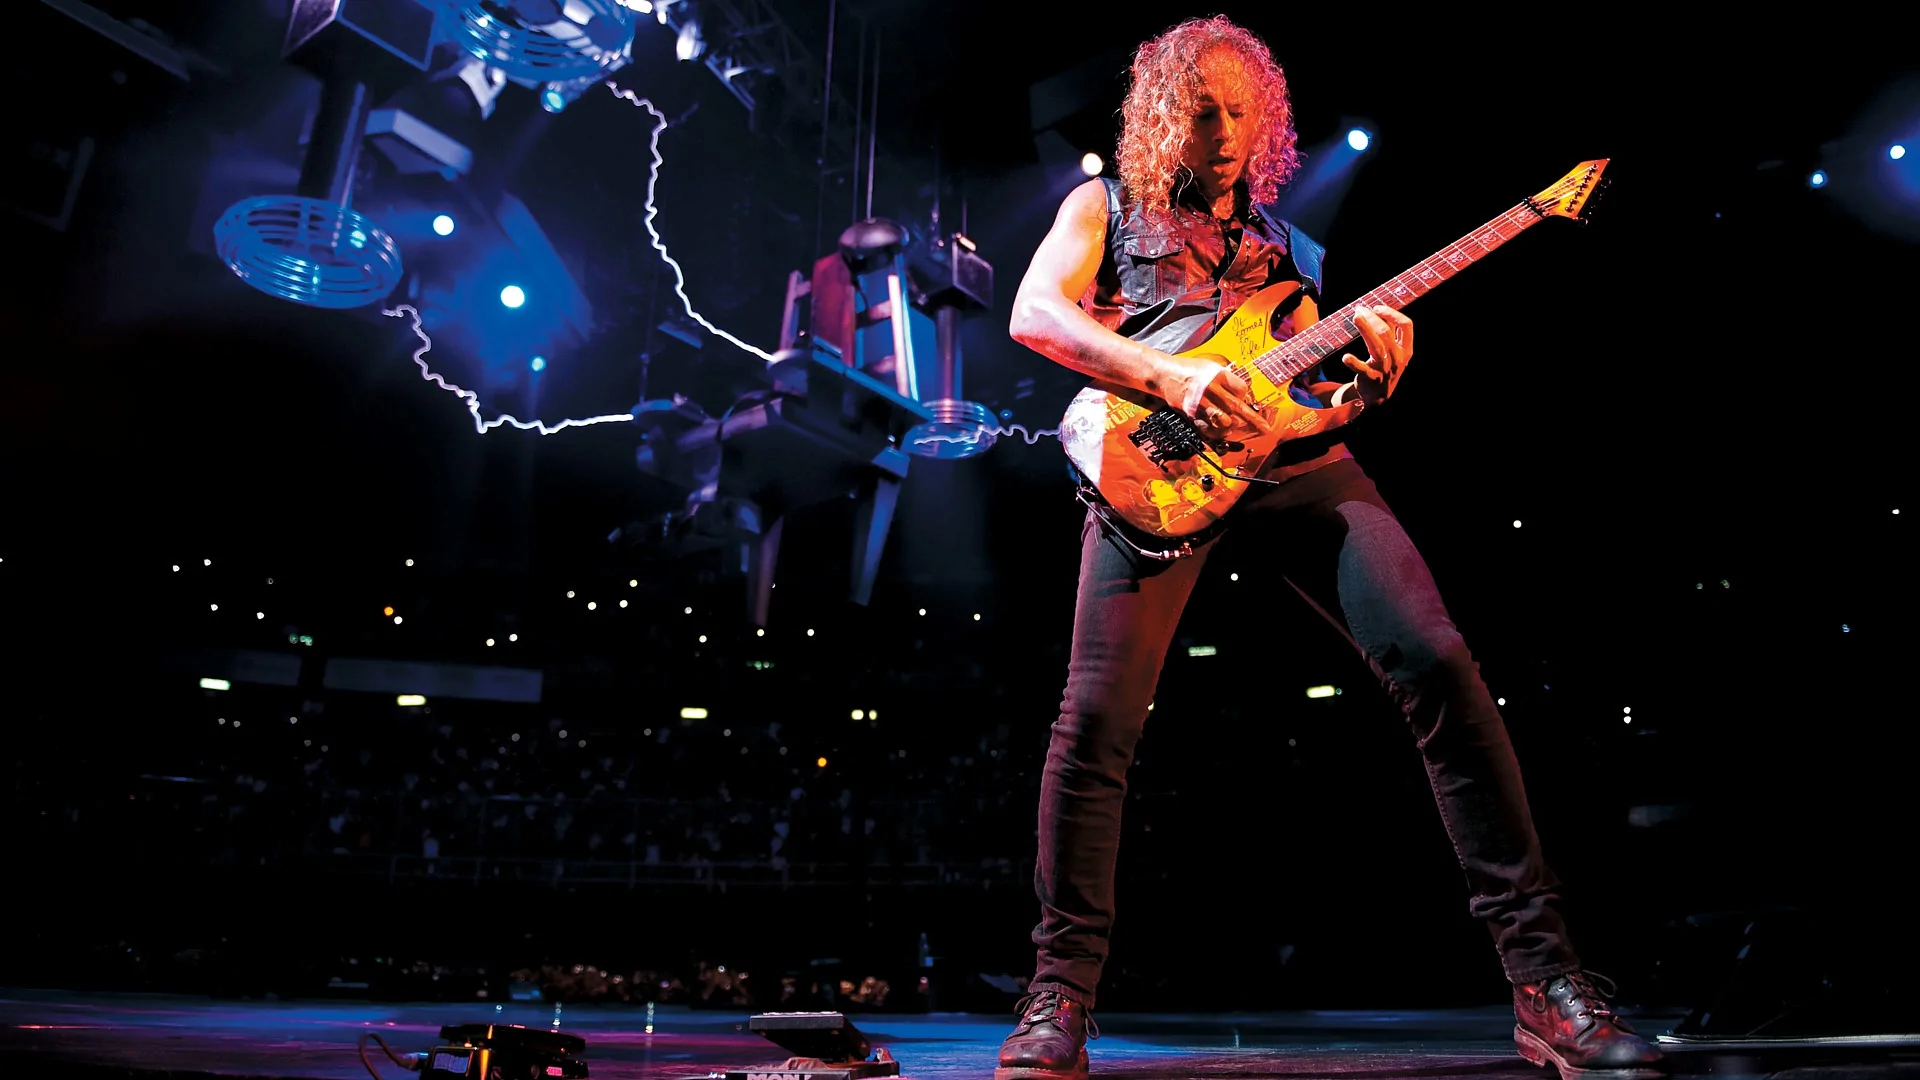 Metallica: Сквозь невозможное